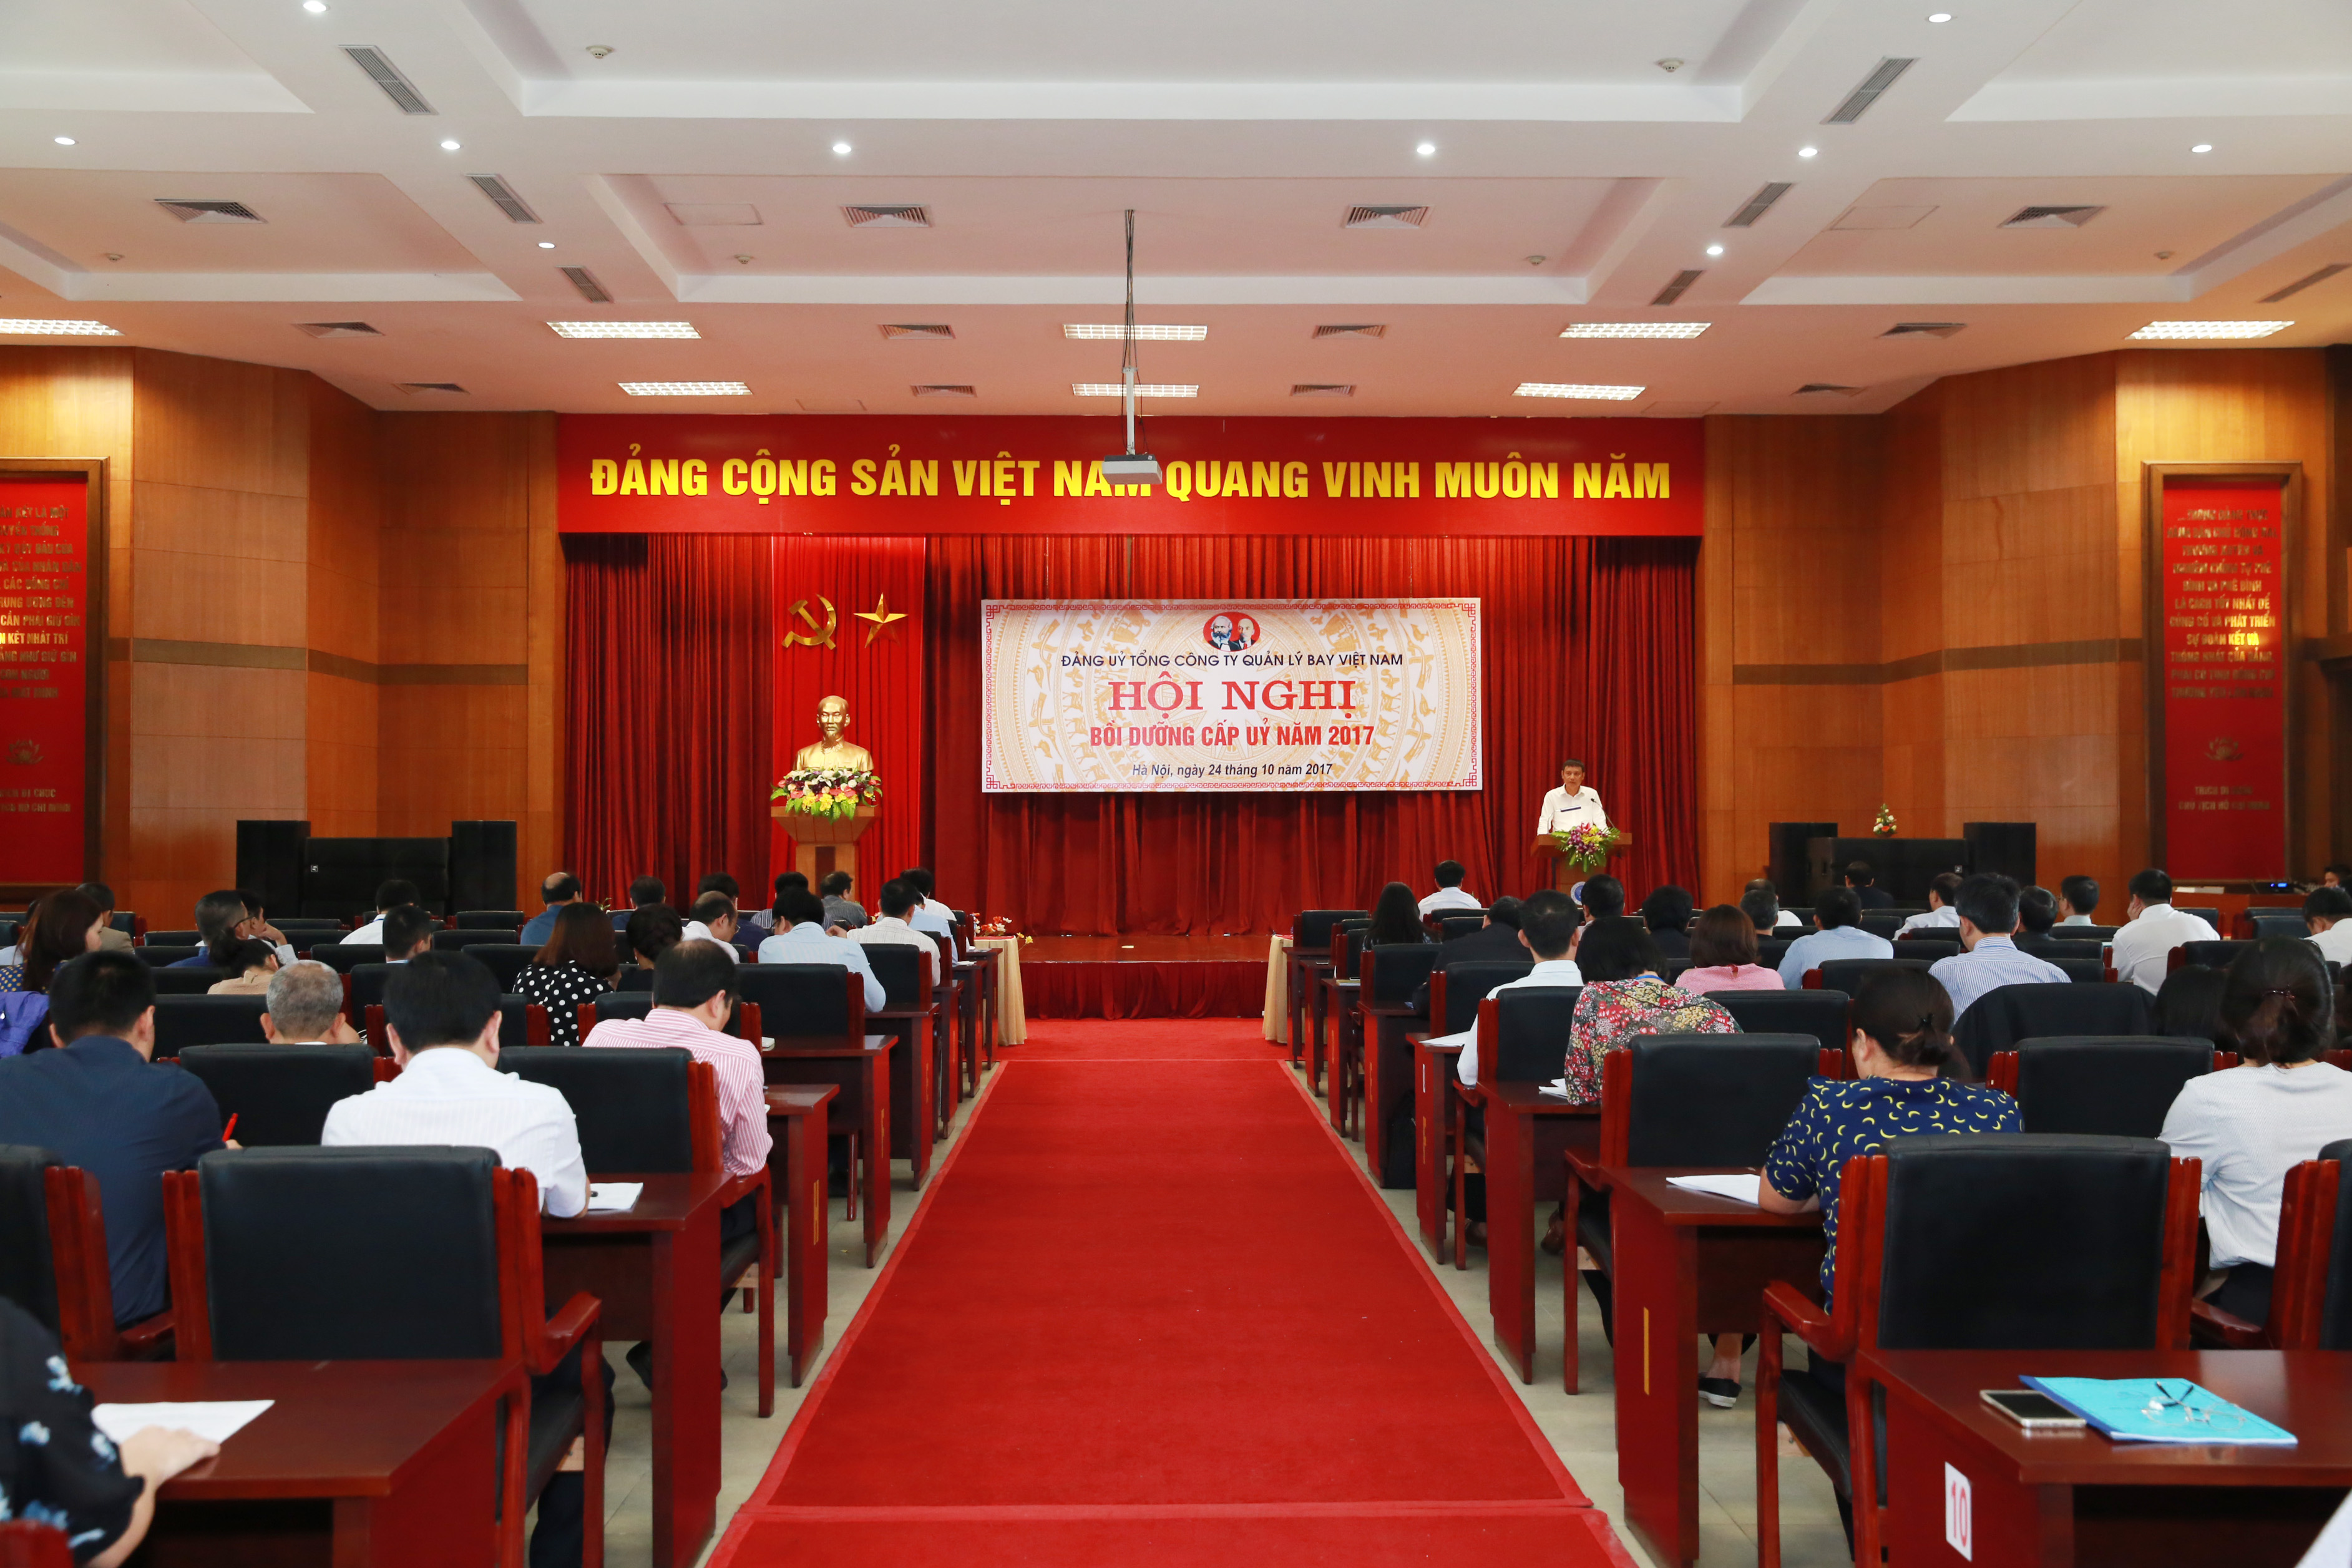 Đảng ủy Tổng công ty Quản lý bay Việt Nam tổ chức Hội nghị Bồi dưỡng cấp ủy năm 2017